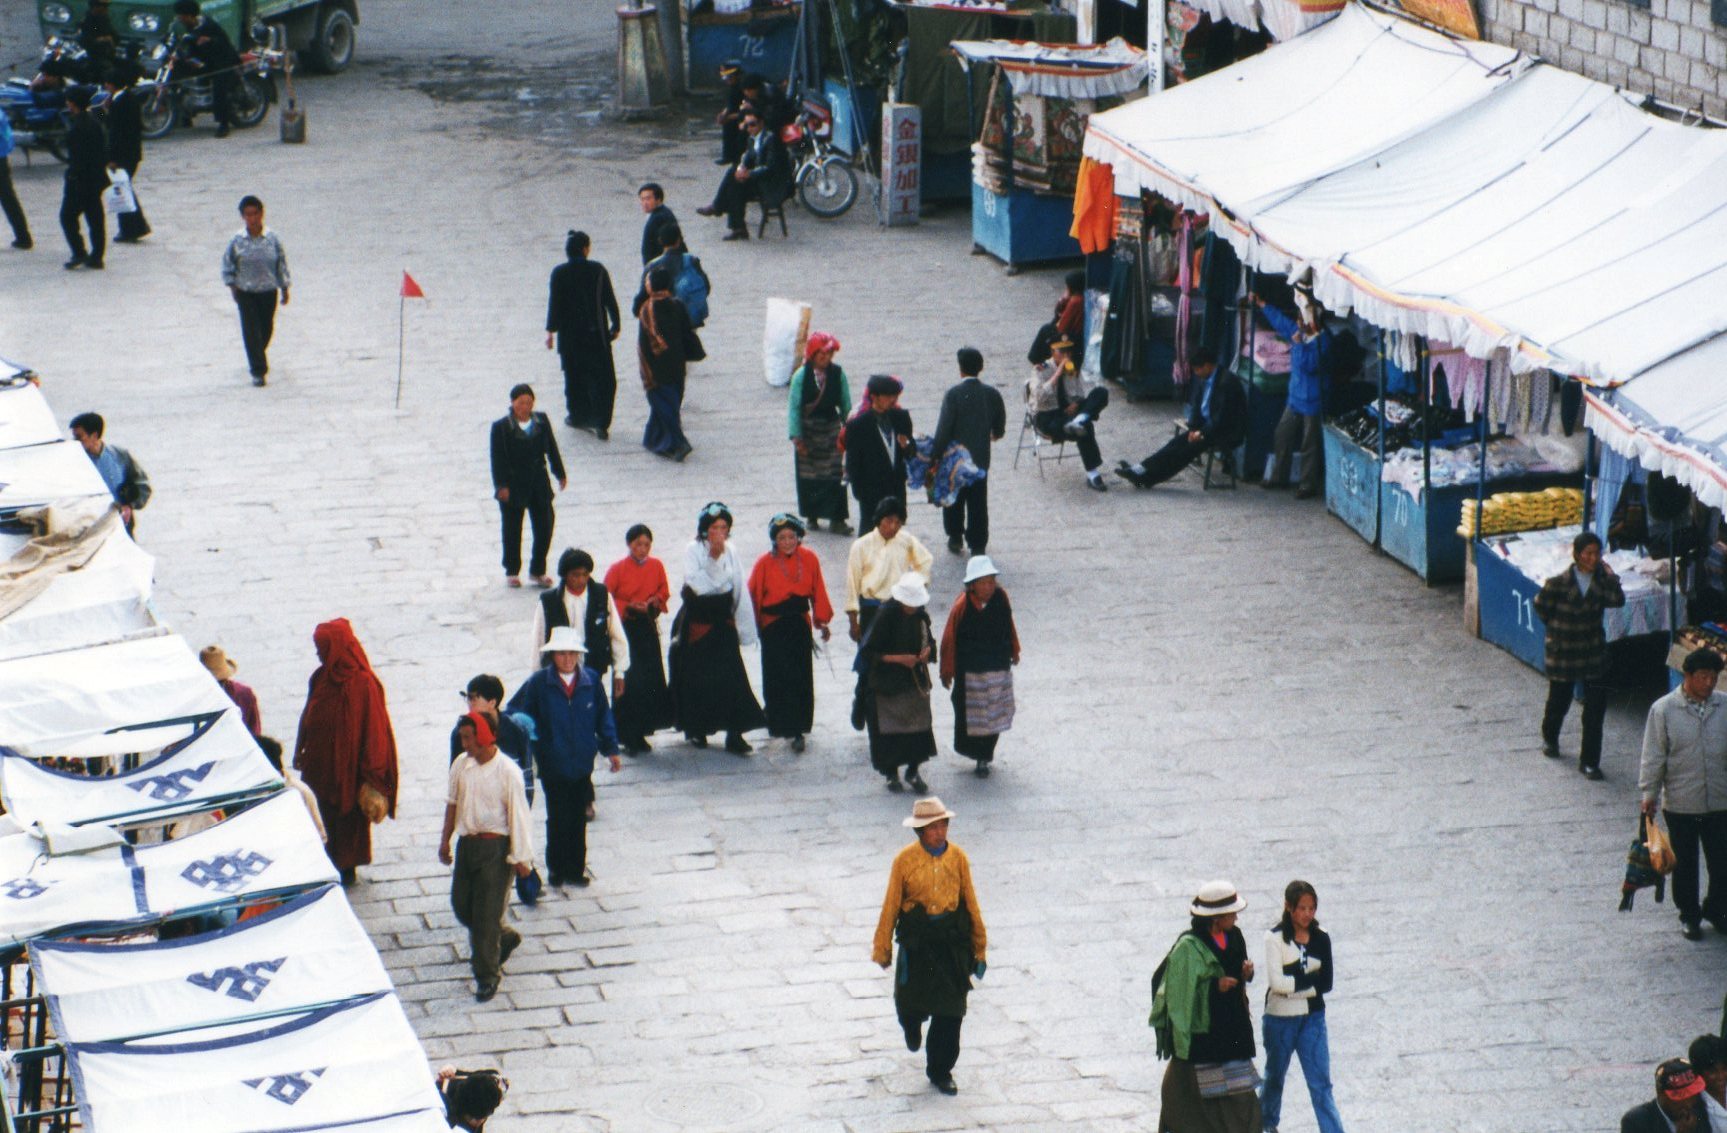 China Tibet, Barkhor Kora, Lhasa, , Walkopedia